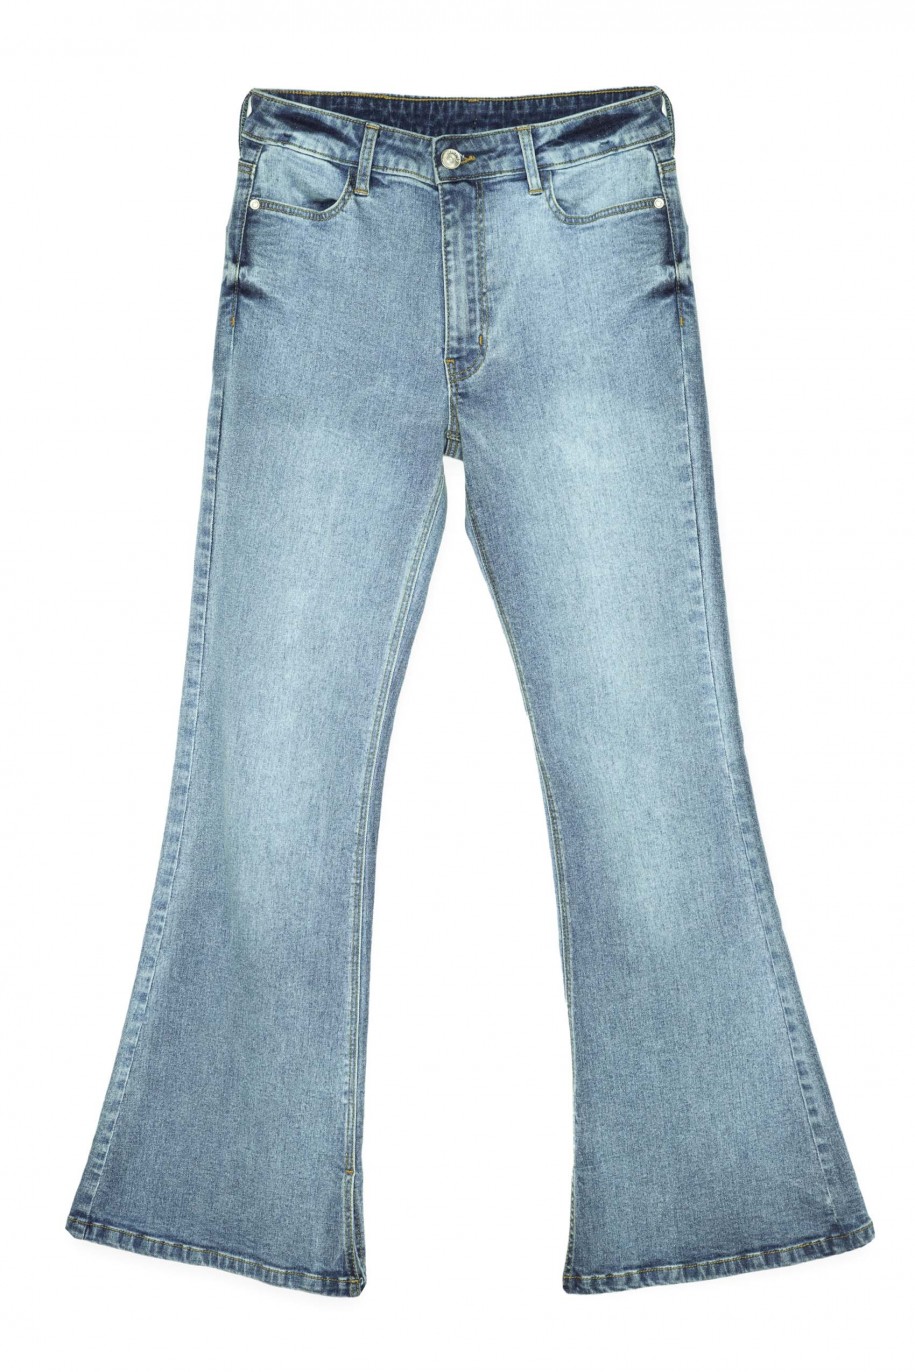 Niebieskie jeansy typu dzwony - 38422